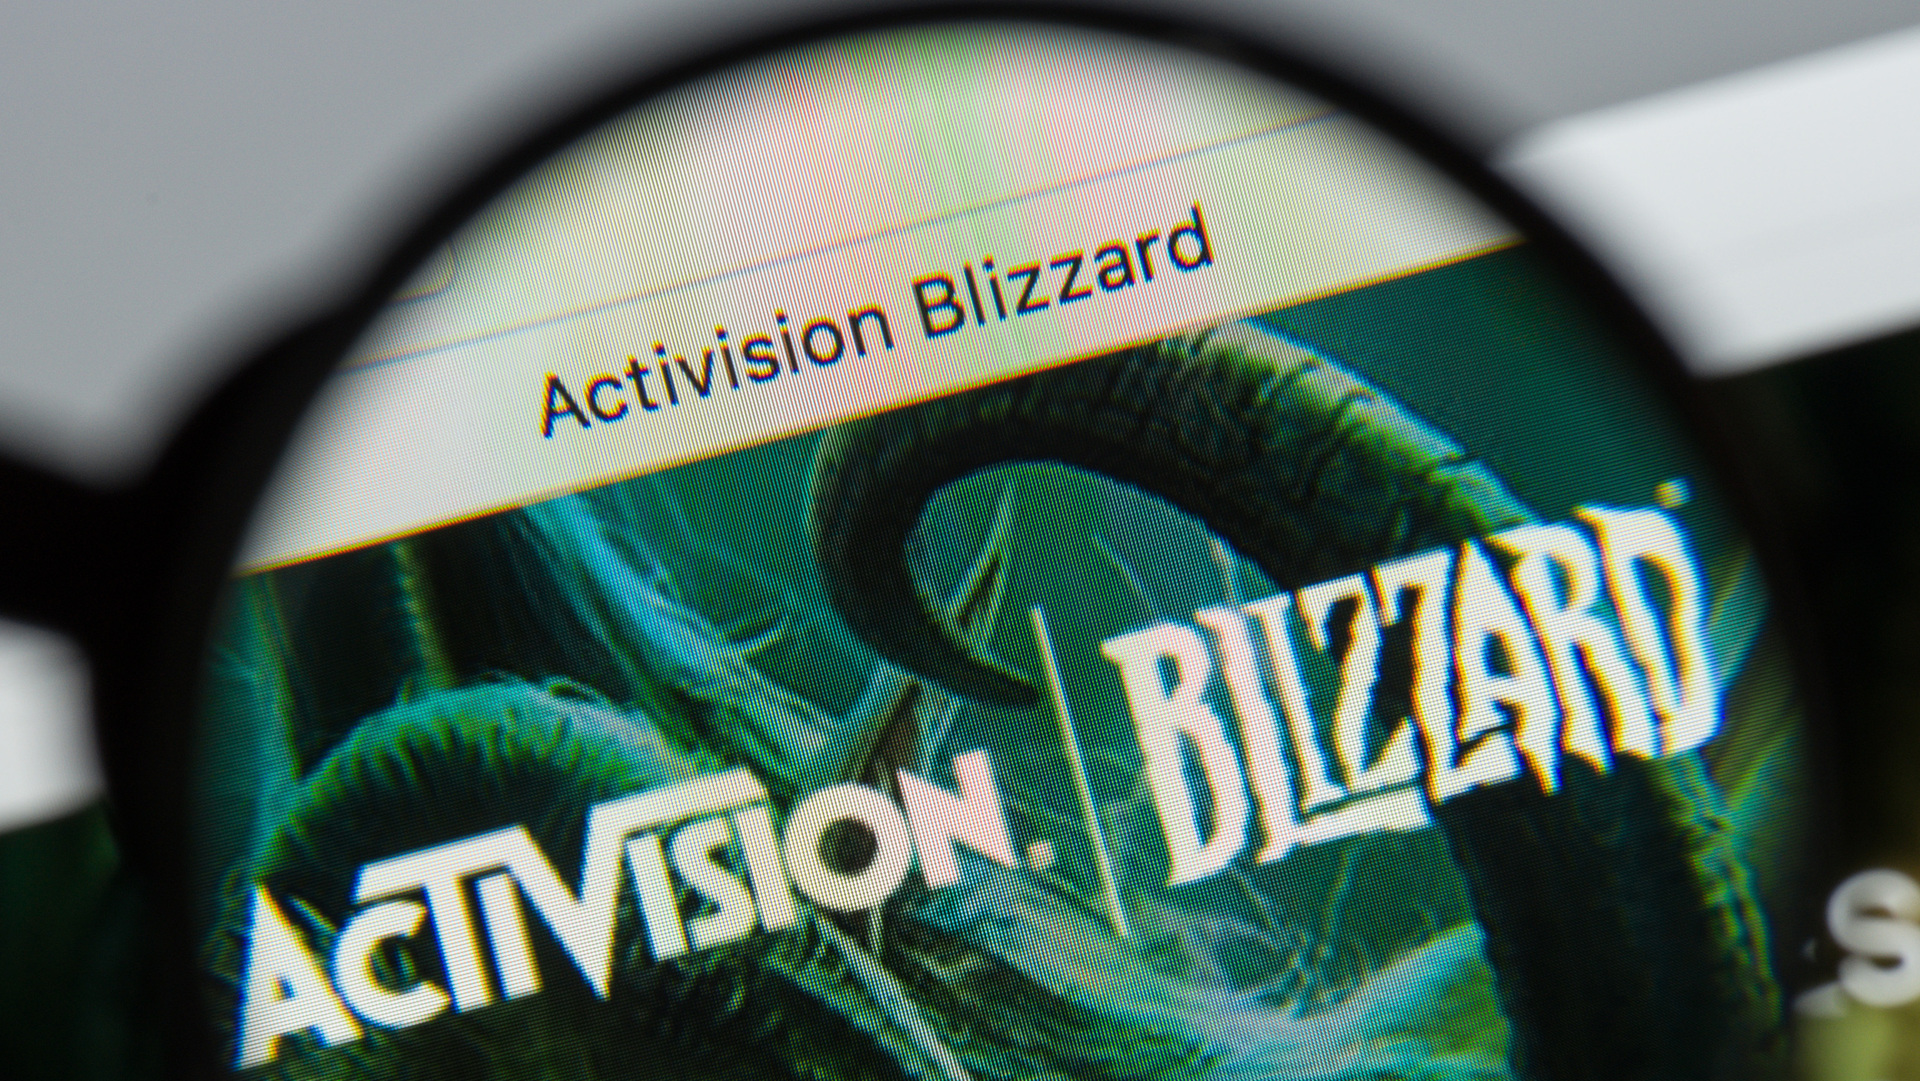 ענקית הגיימינג אקטיוויז'ן-בליזארד Activision Blizzard